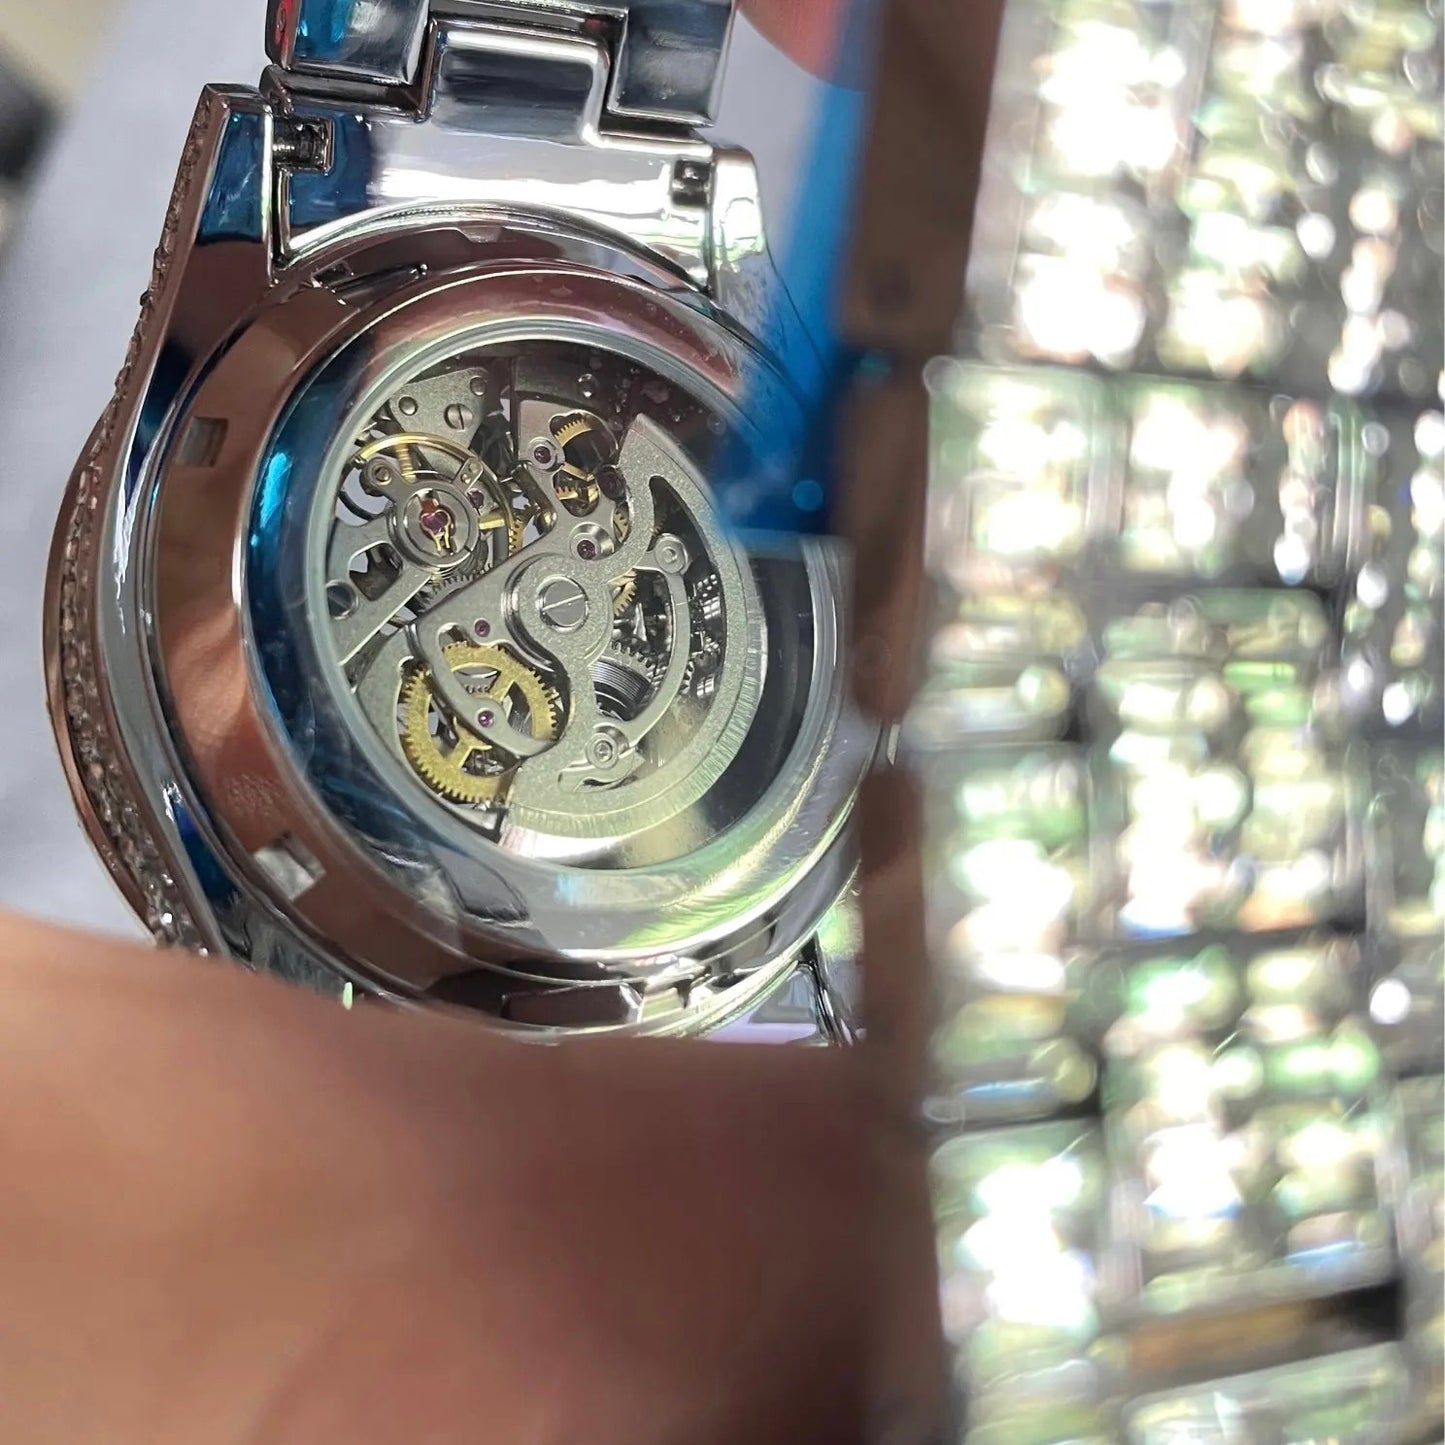 Baguette Diamanten Automatische Rollie Horloge